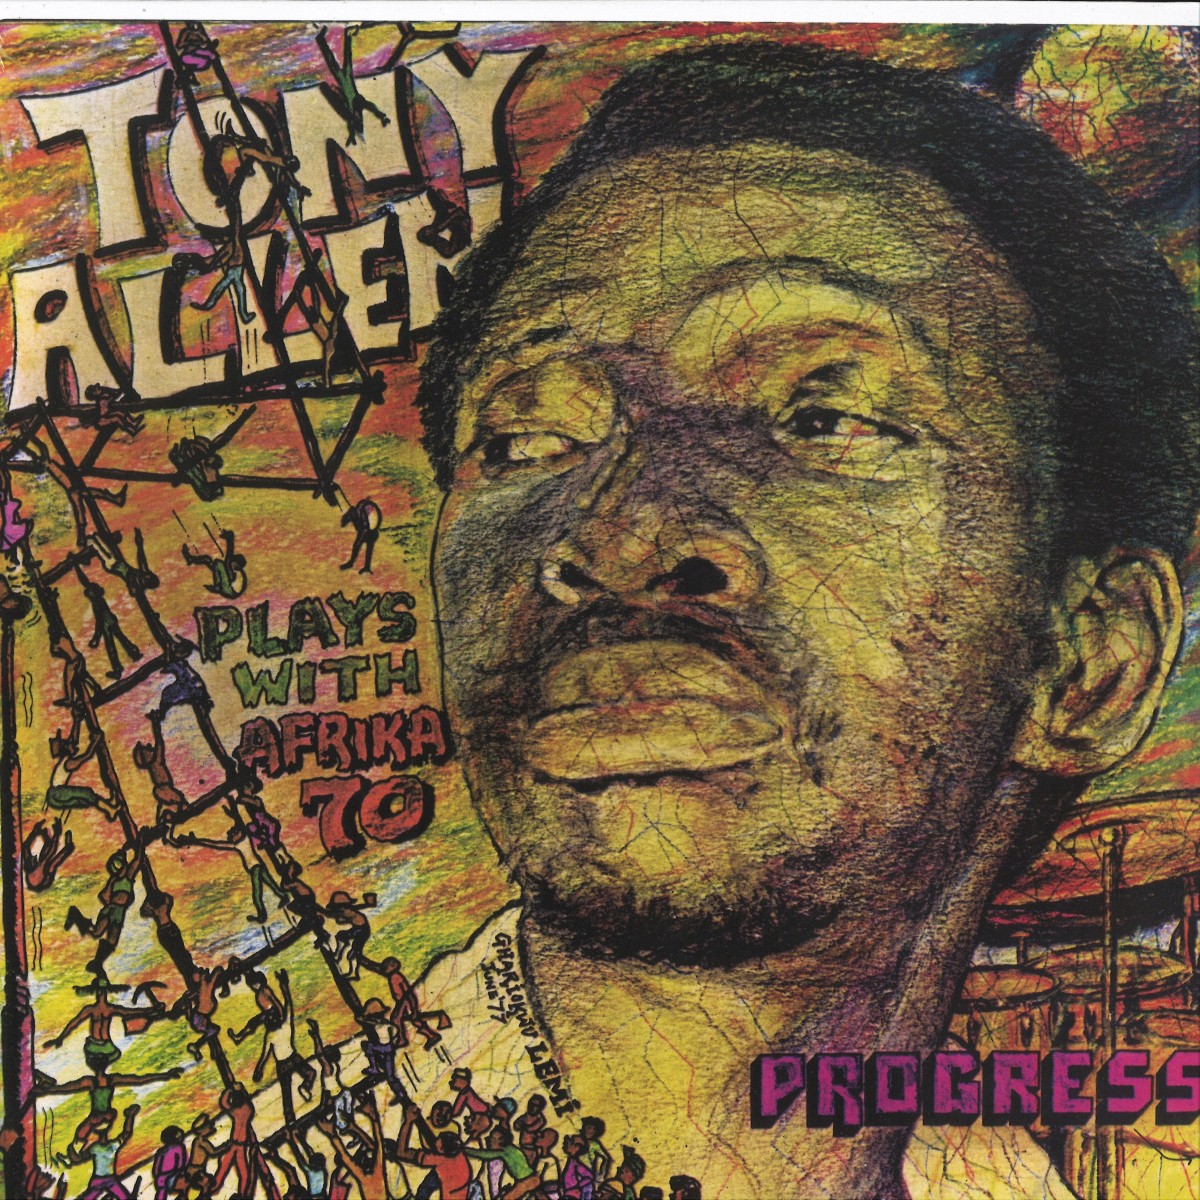 TONY ALLEN PLAYS WITH AFRIKA 70 - PROGRESS / Comet Records COMET095 - Vinyl